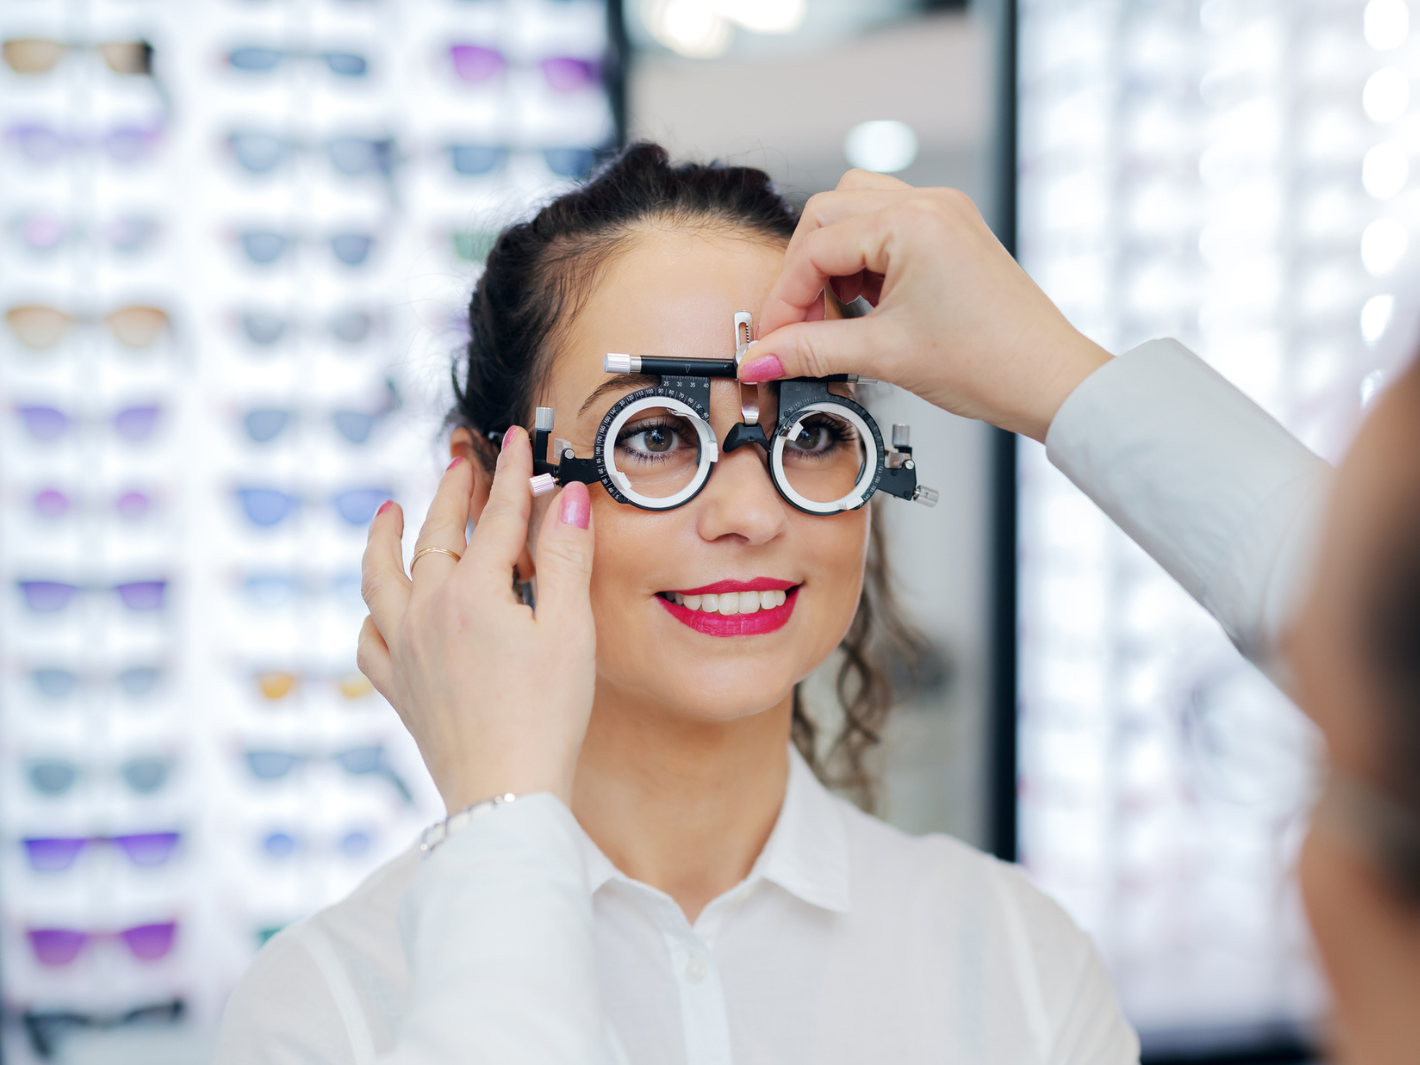 Corriger sa vue : lunettes / lentilles / chirurgie… que choisir ?